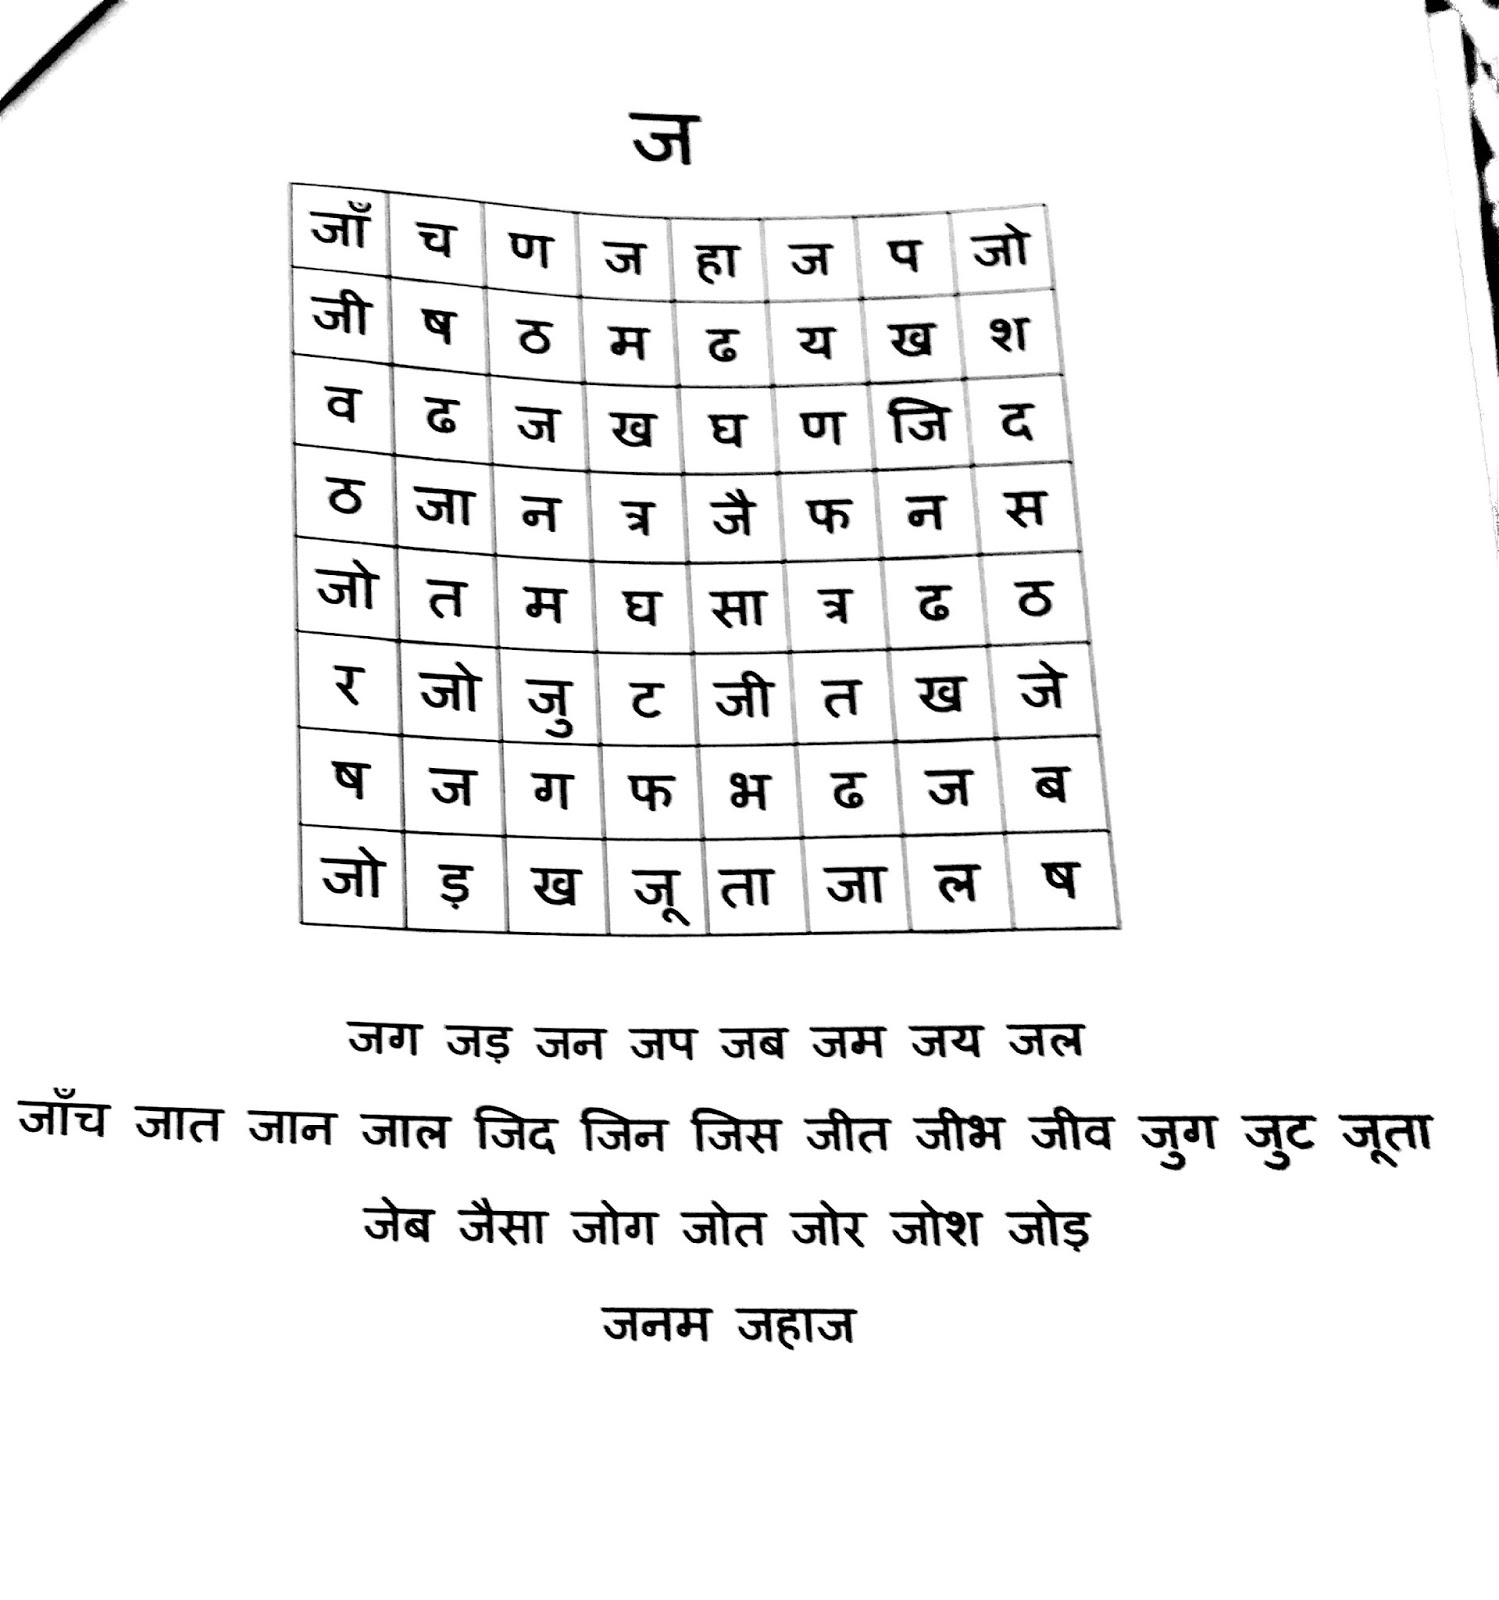 hindi-alphabet-chart-subha-manoj-images